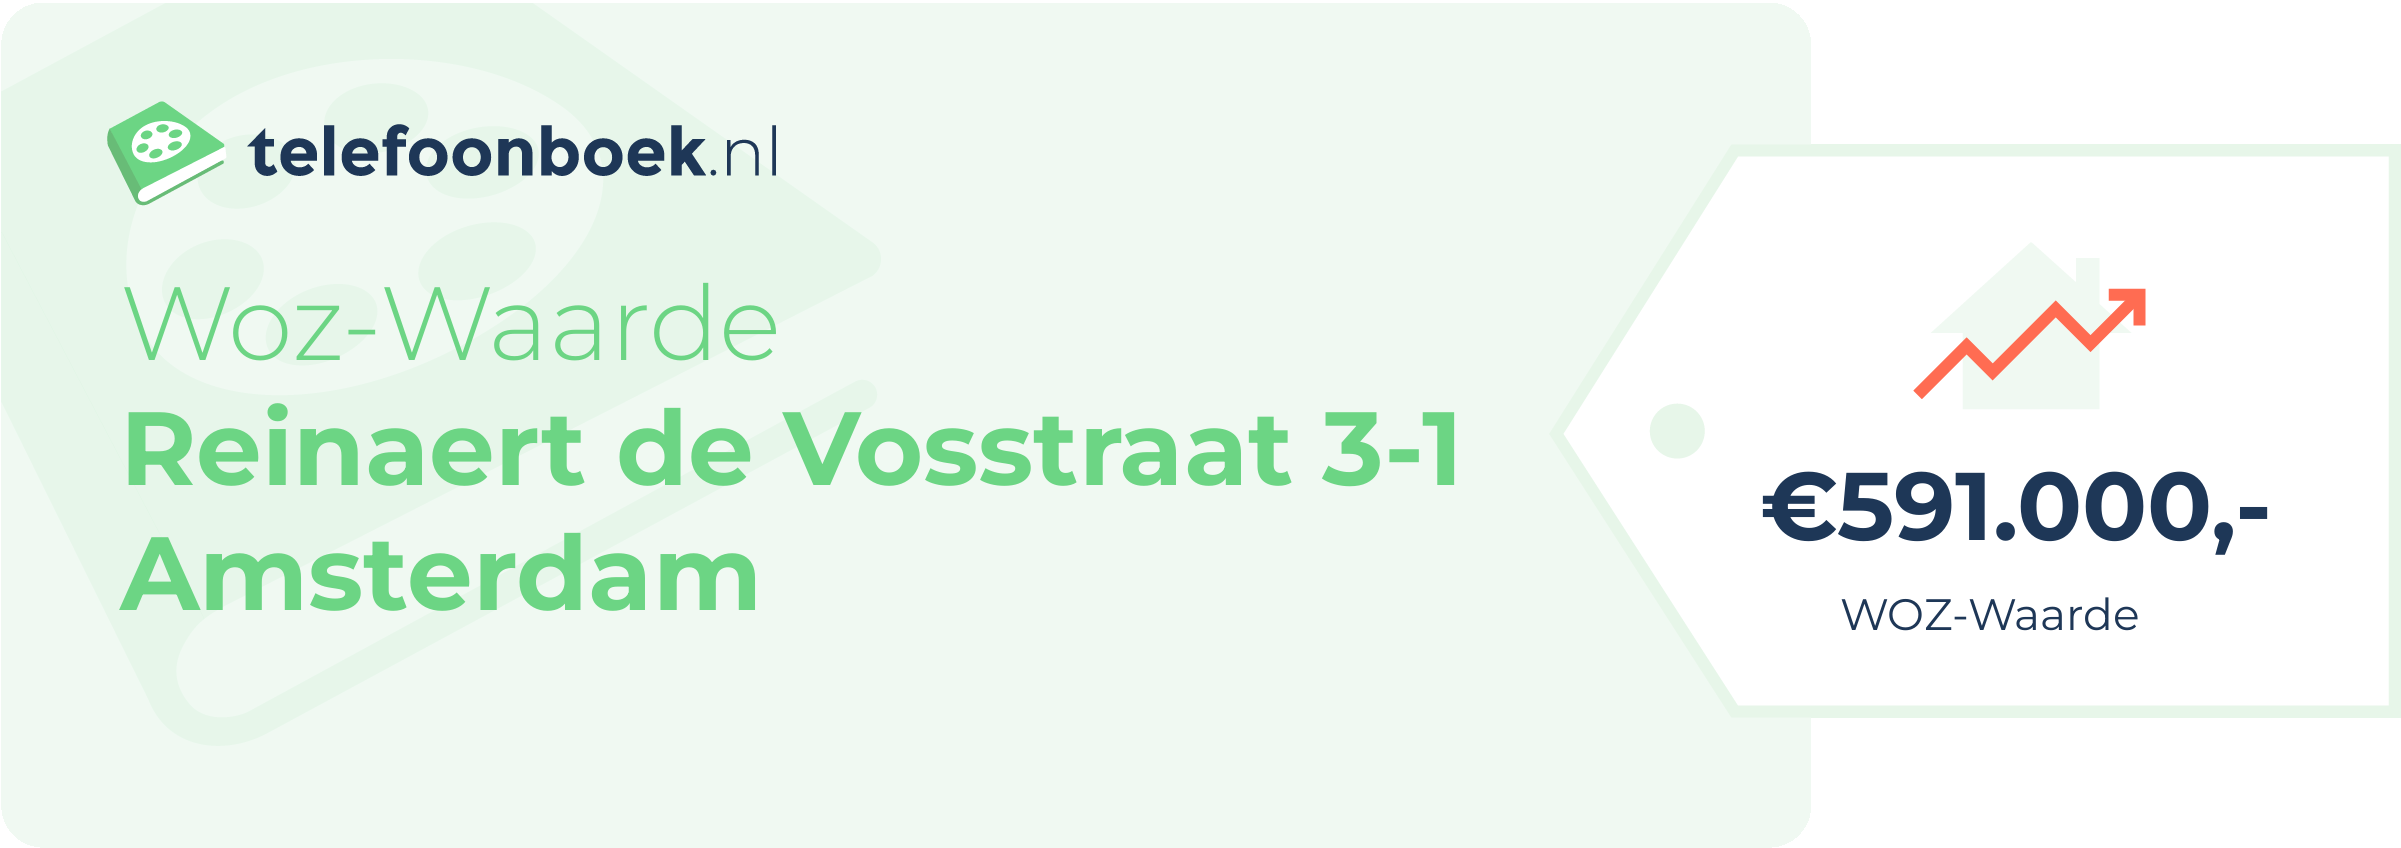 WOZ-waarde Reinaert De Vosstraat 3-1 Amsterdam